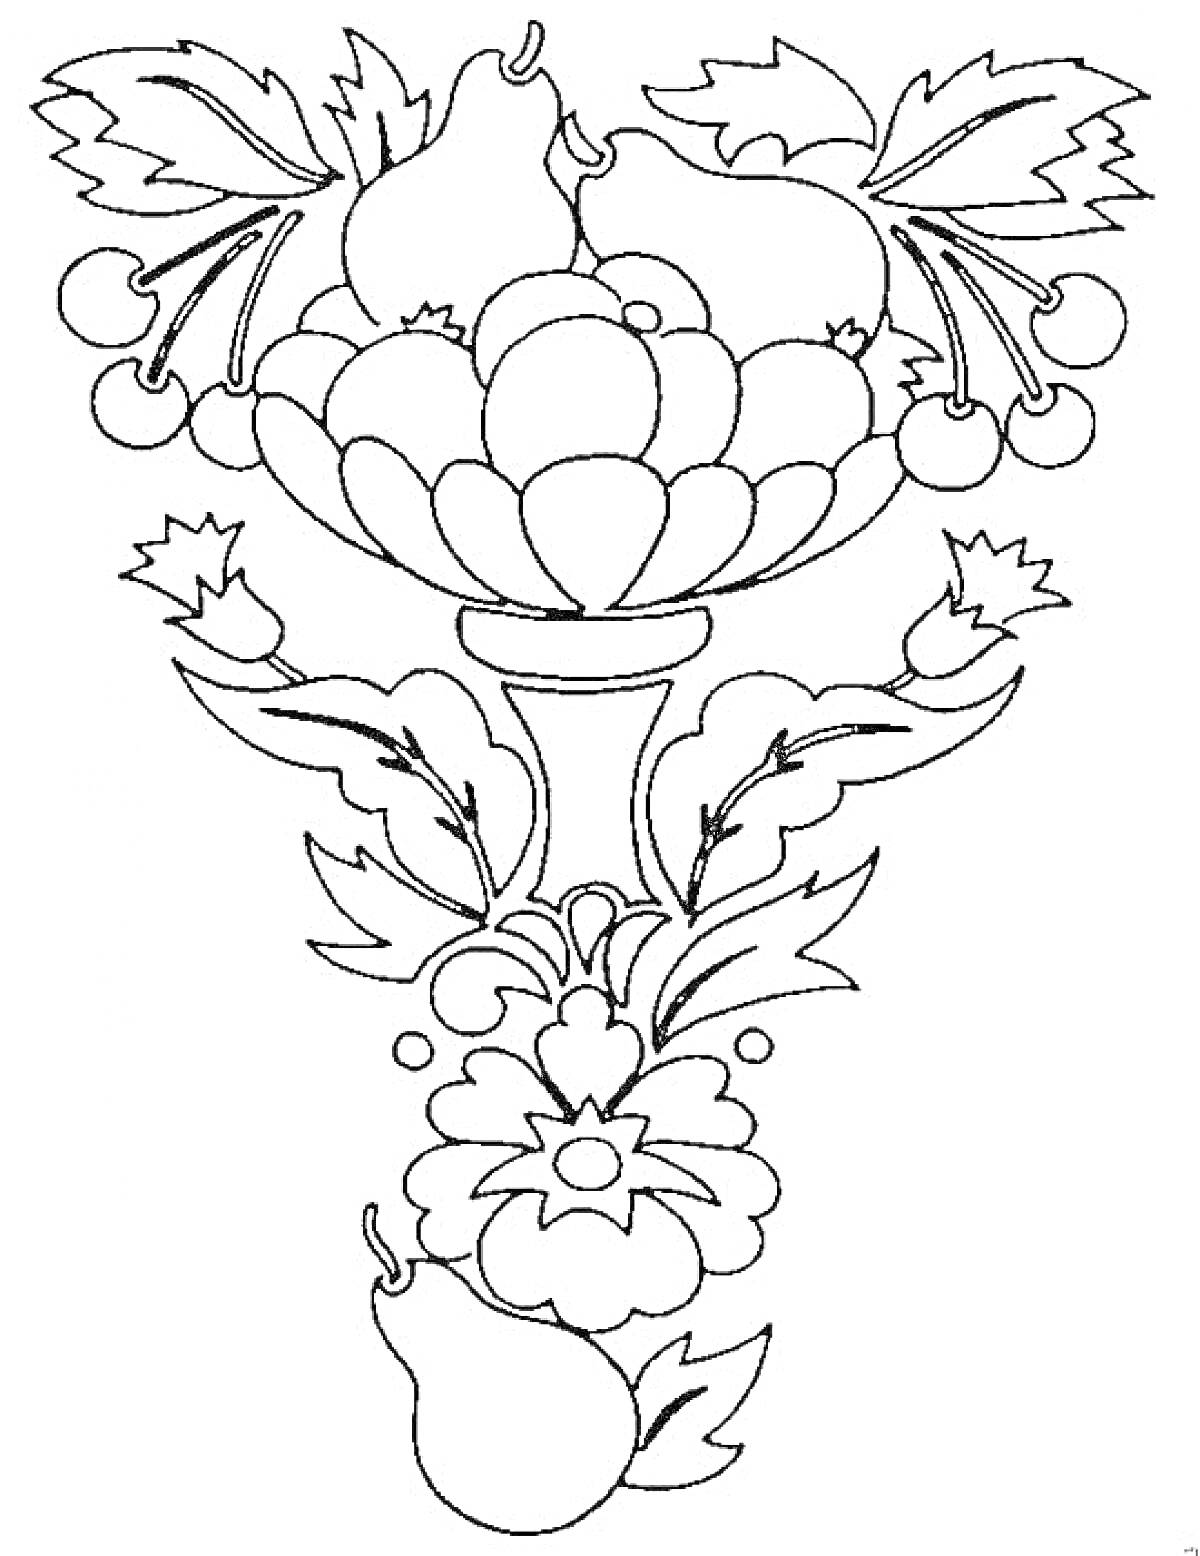 Раскраска Ваза с фруктами и цветами (груши, яблоки, вишни)